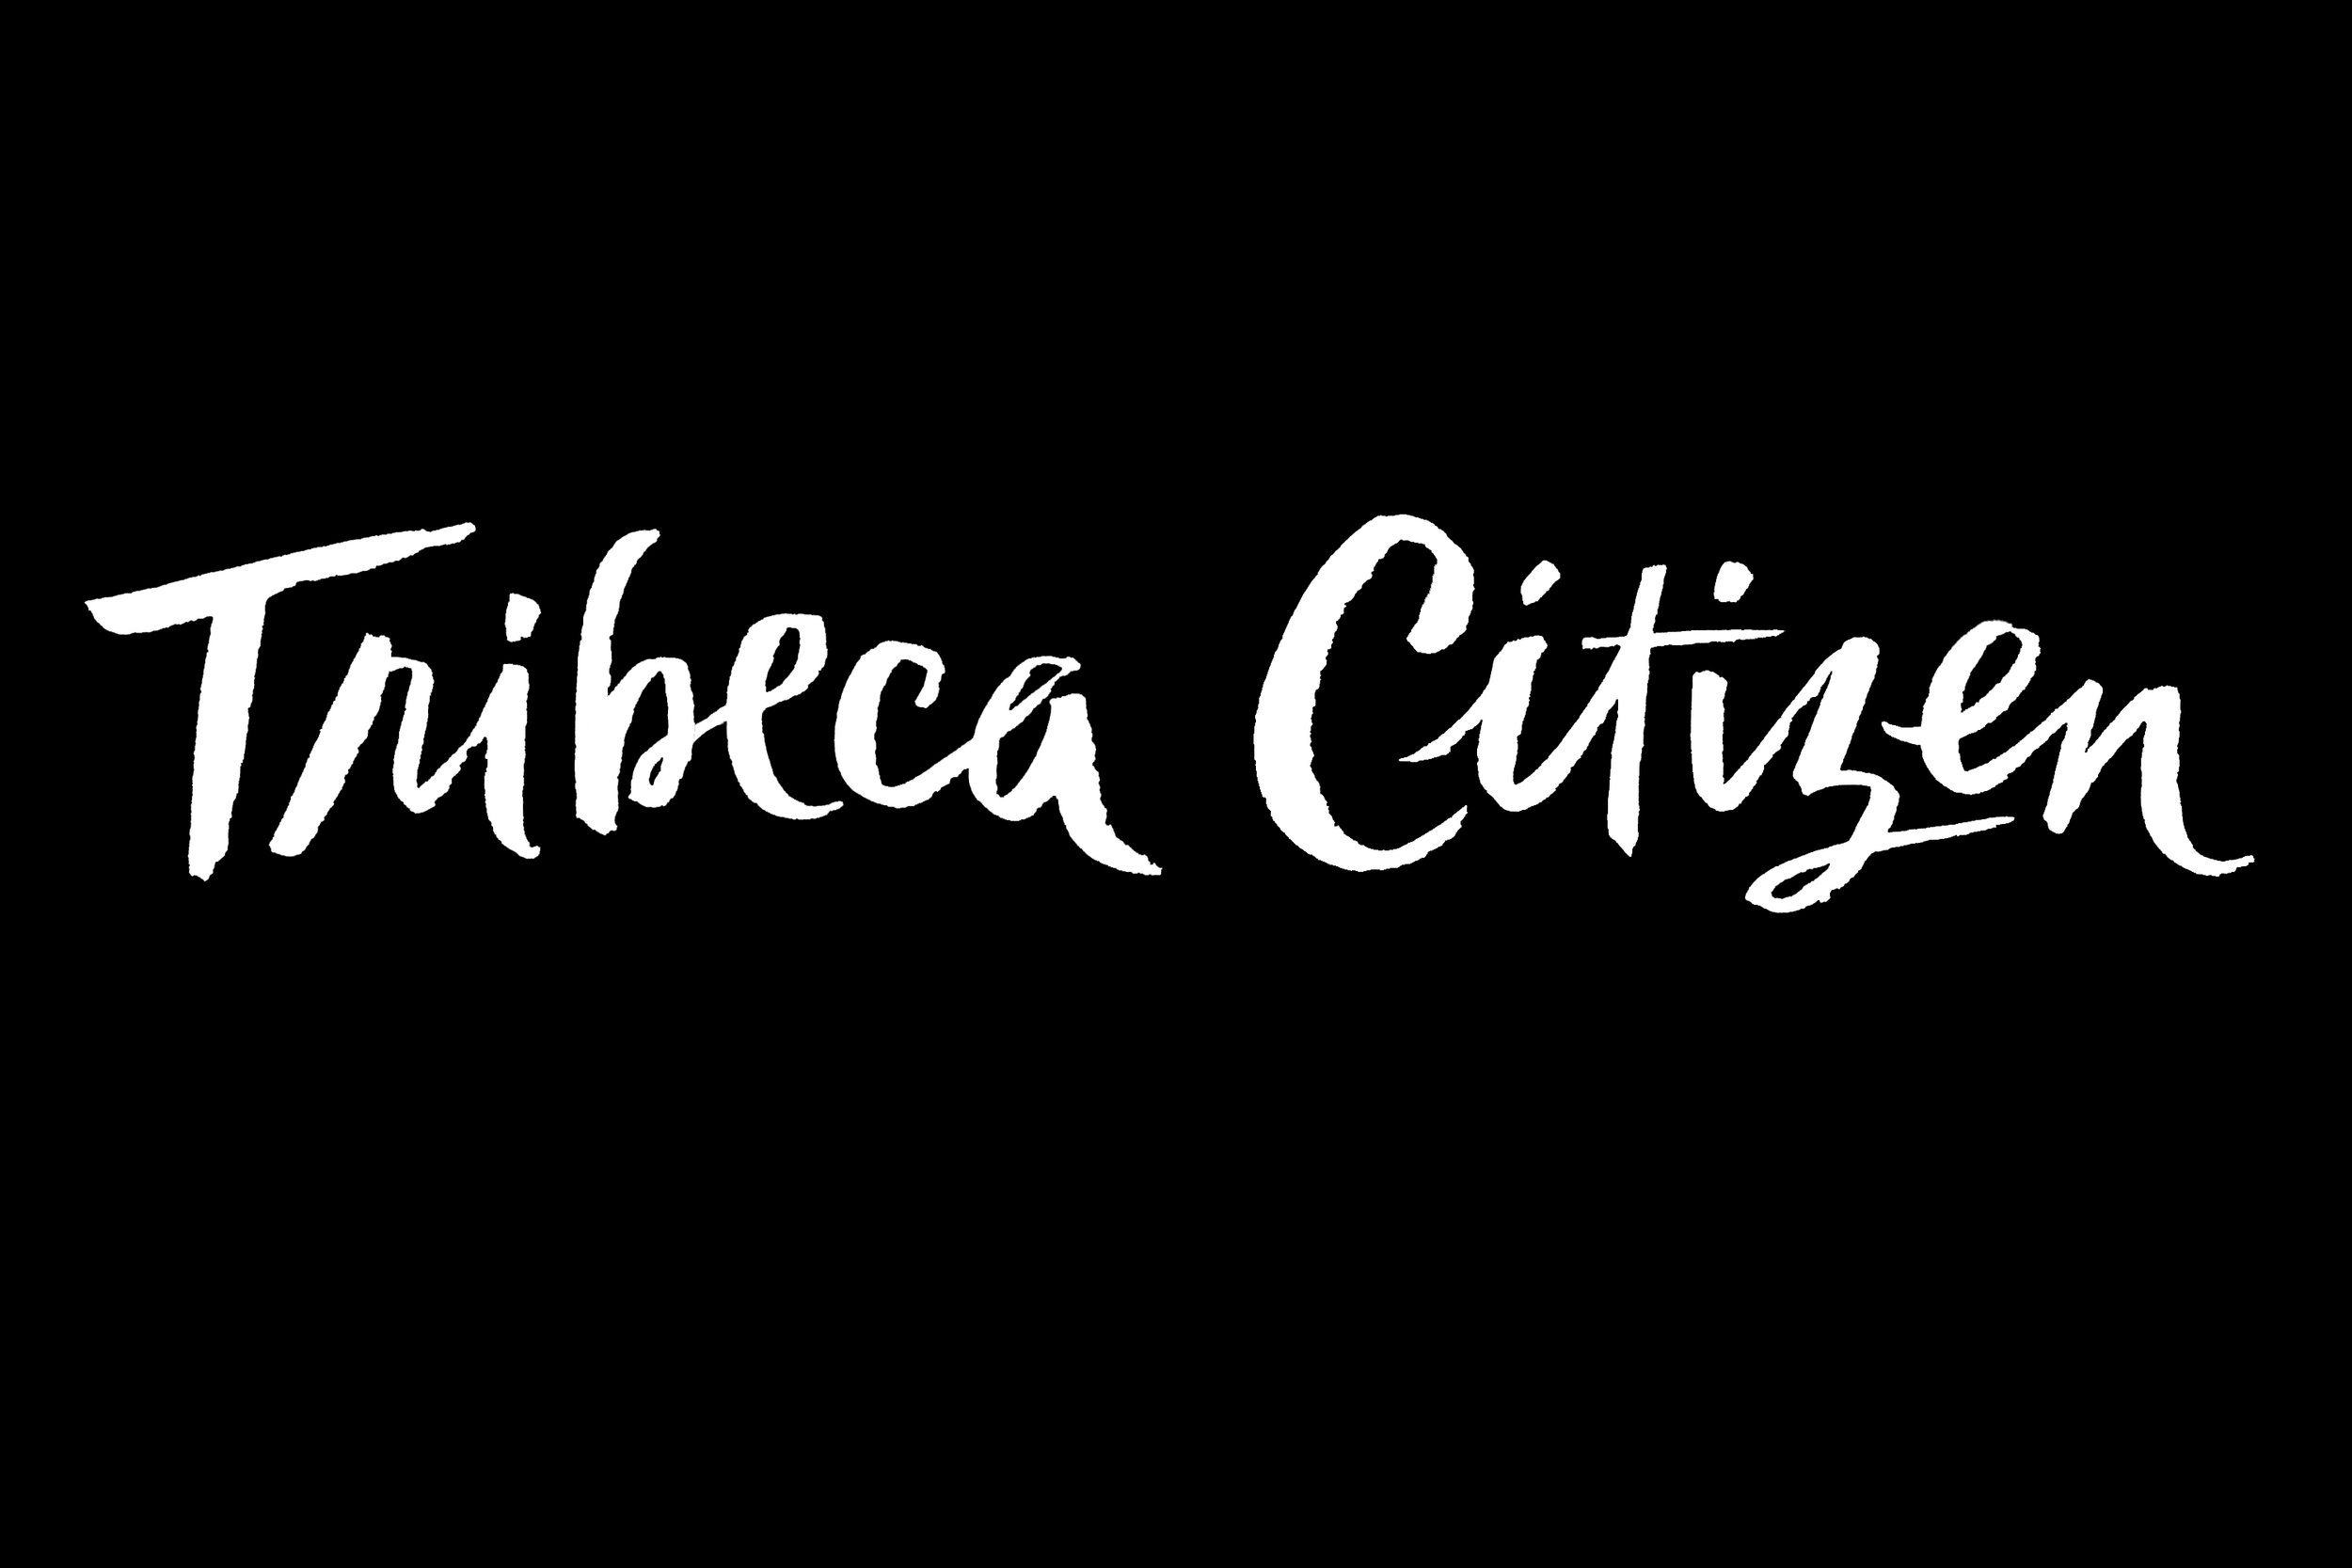 Hand-Lettered-logo-by-Erin-Ellis_Tribeca-Citizen-6.jpg